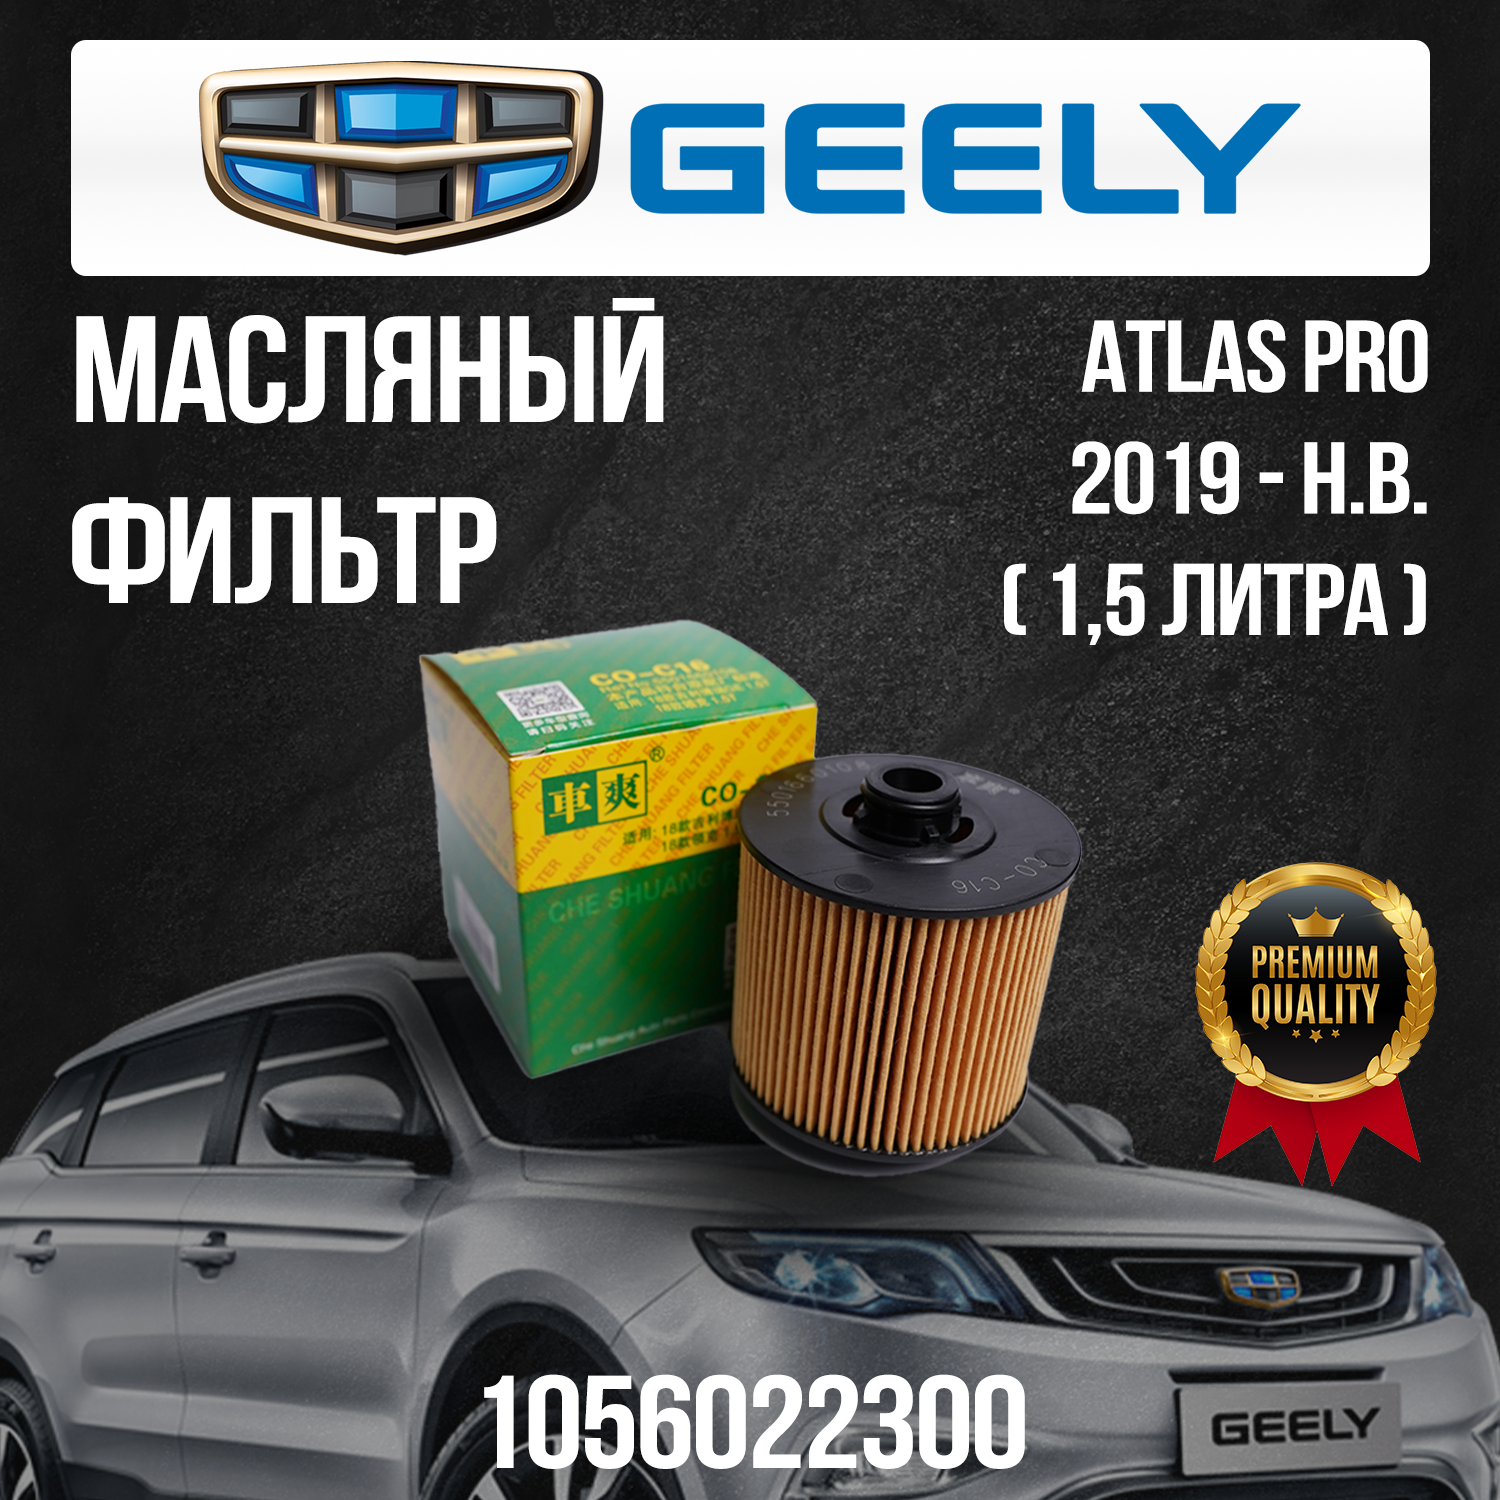 Масляный фильтр Geely Atlas Pro / Джили Атлас Про / 1056022300 / 15 литра